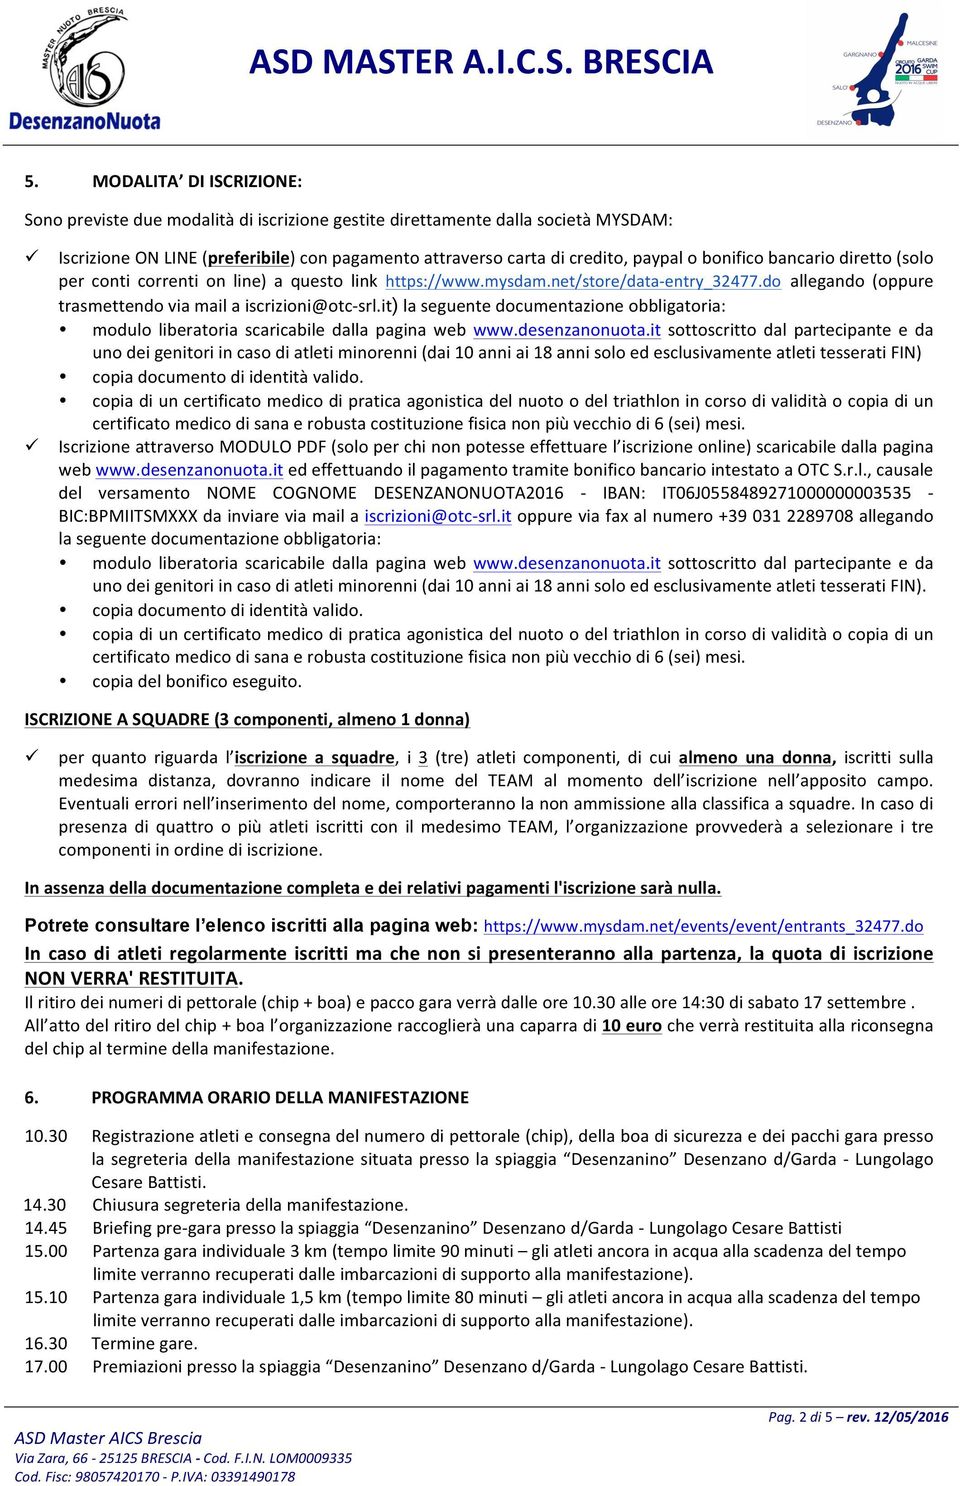 it) la seguente documentazione obbligatoria: modulo liberatoria scaricabile dalla pagina web www.desenzanonuota.